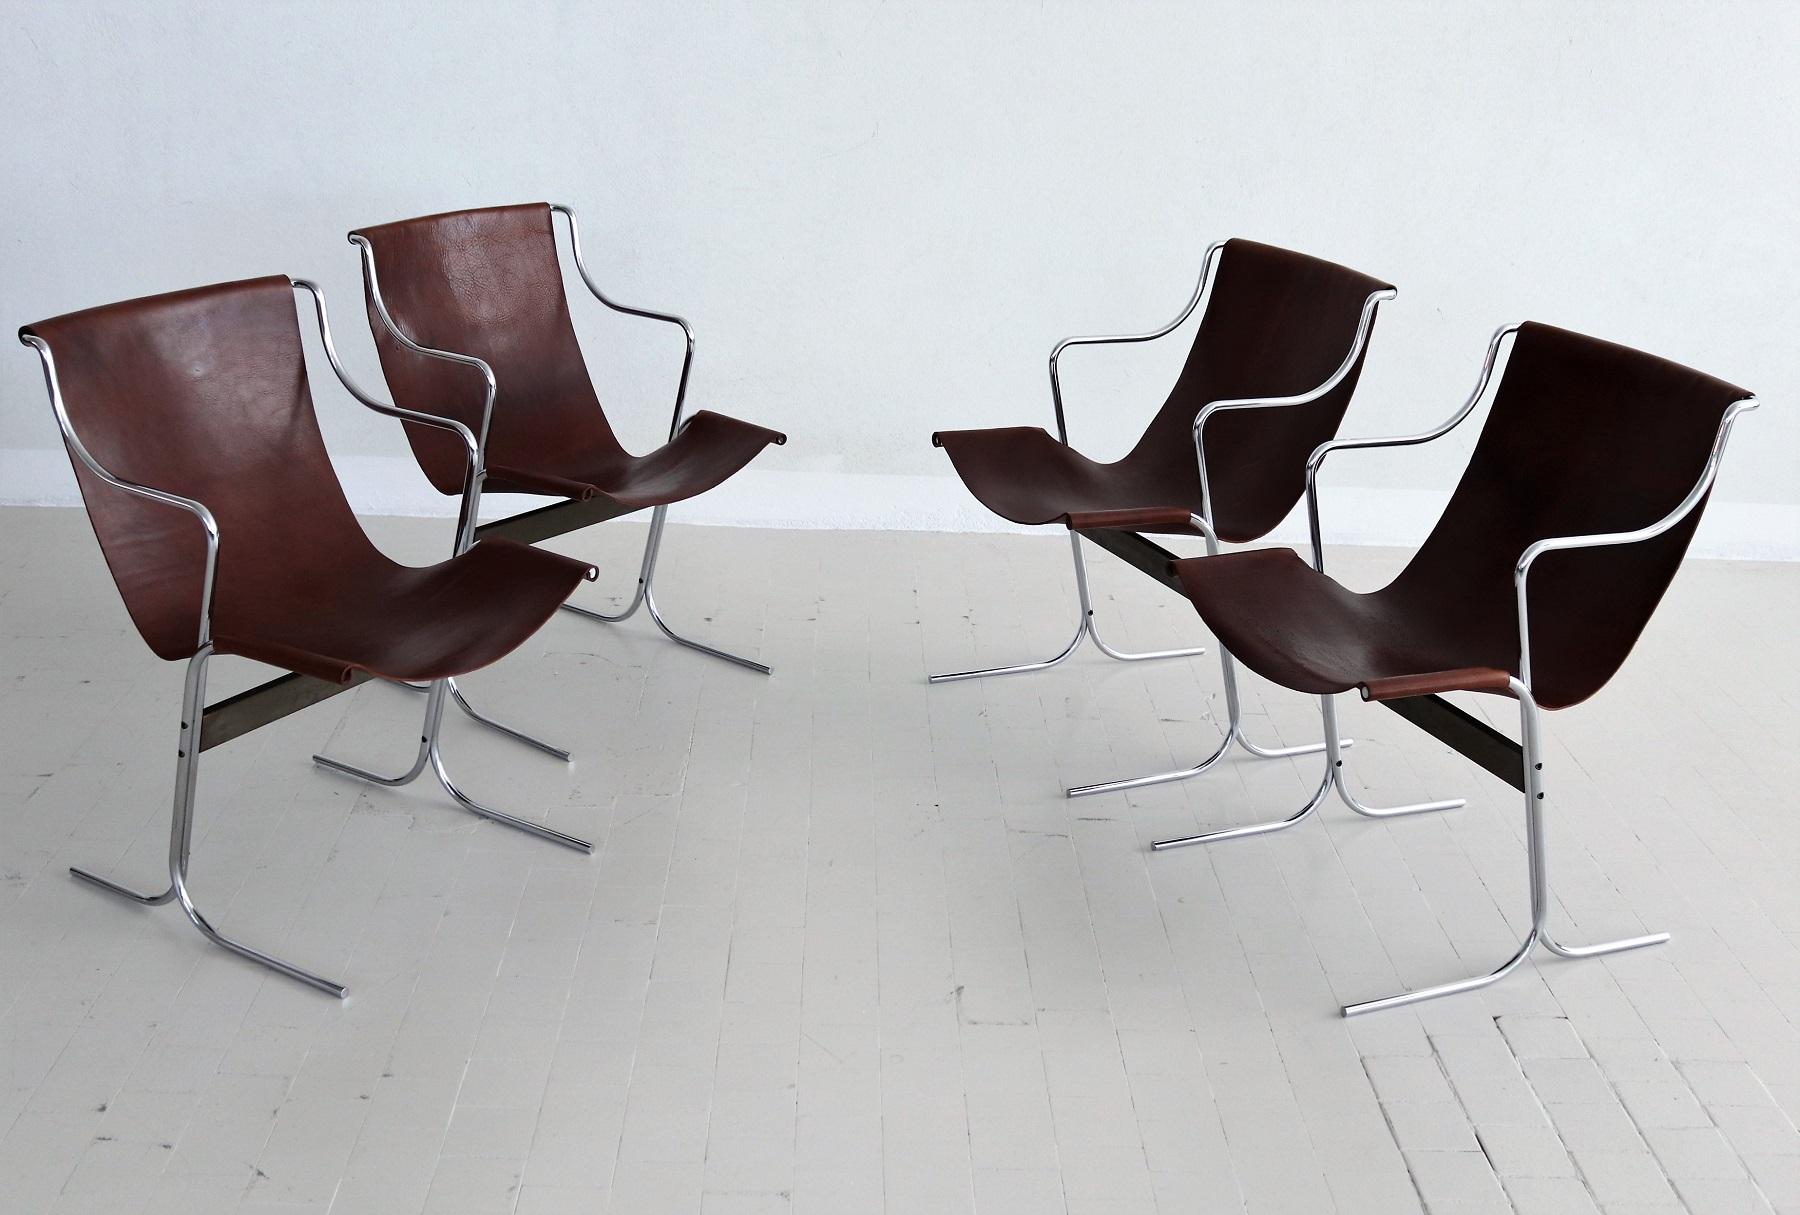 Grooviger Satz von vier Lounge-Stühlen, entworfen von Ross Littell und hergestellt von ICF De Padova, Mailand (ca. 1960er Jahre).
Die Loungesessel sind im minimalistischen Stil gehalten. 
In schönem, sehr gutem Vintage-Zustand ist das